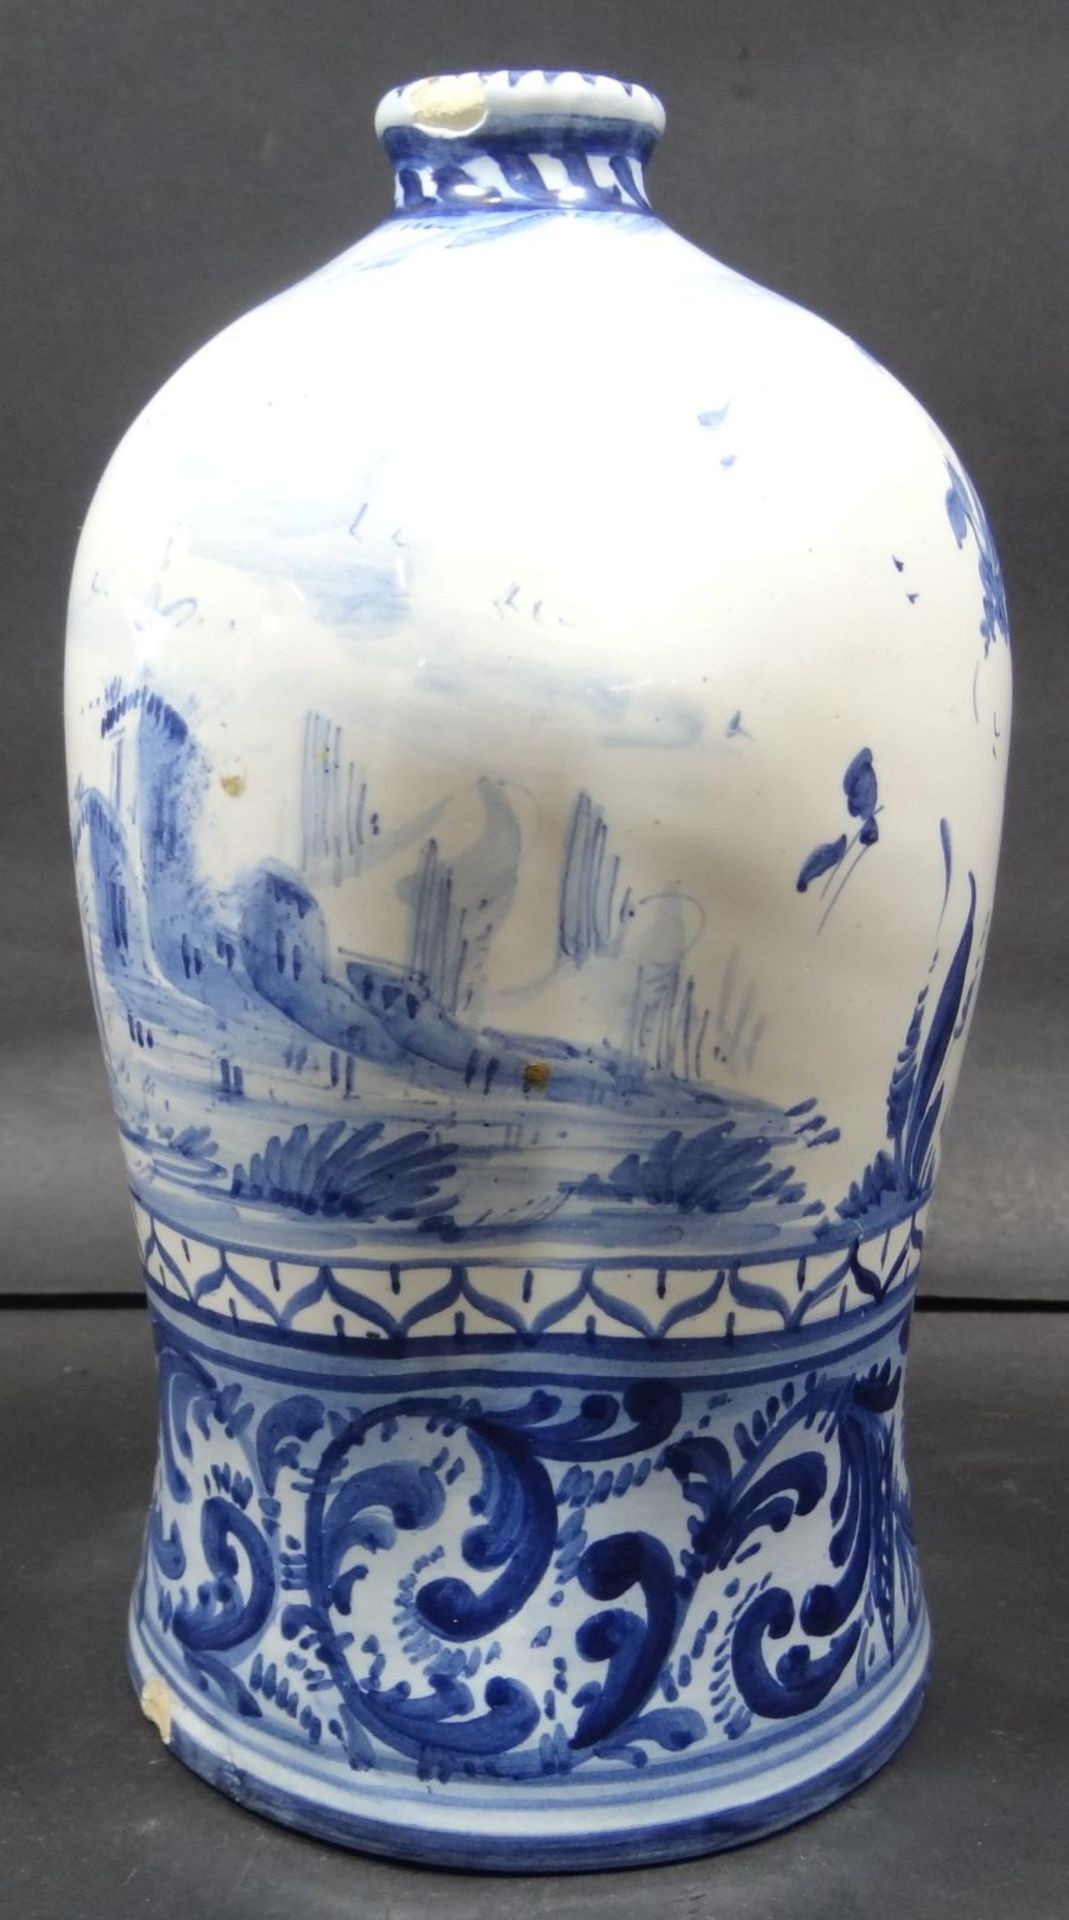 Delfter Buckelflasche mit Blaumalerei, wohl 18/19.Jhd?, div. kl. Glasurabplatzer, H-20 cm- - -22. - Bild 3 aus 7